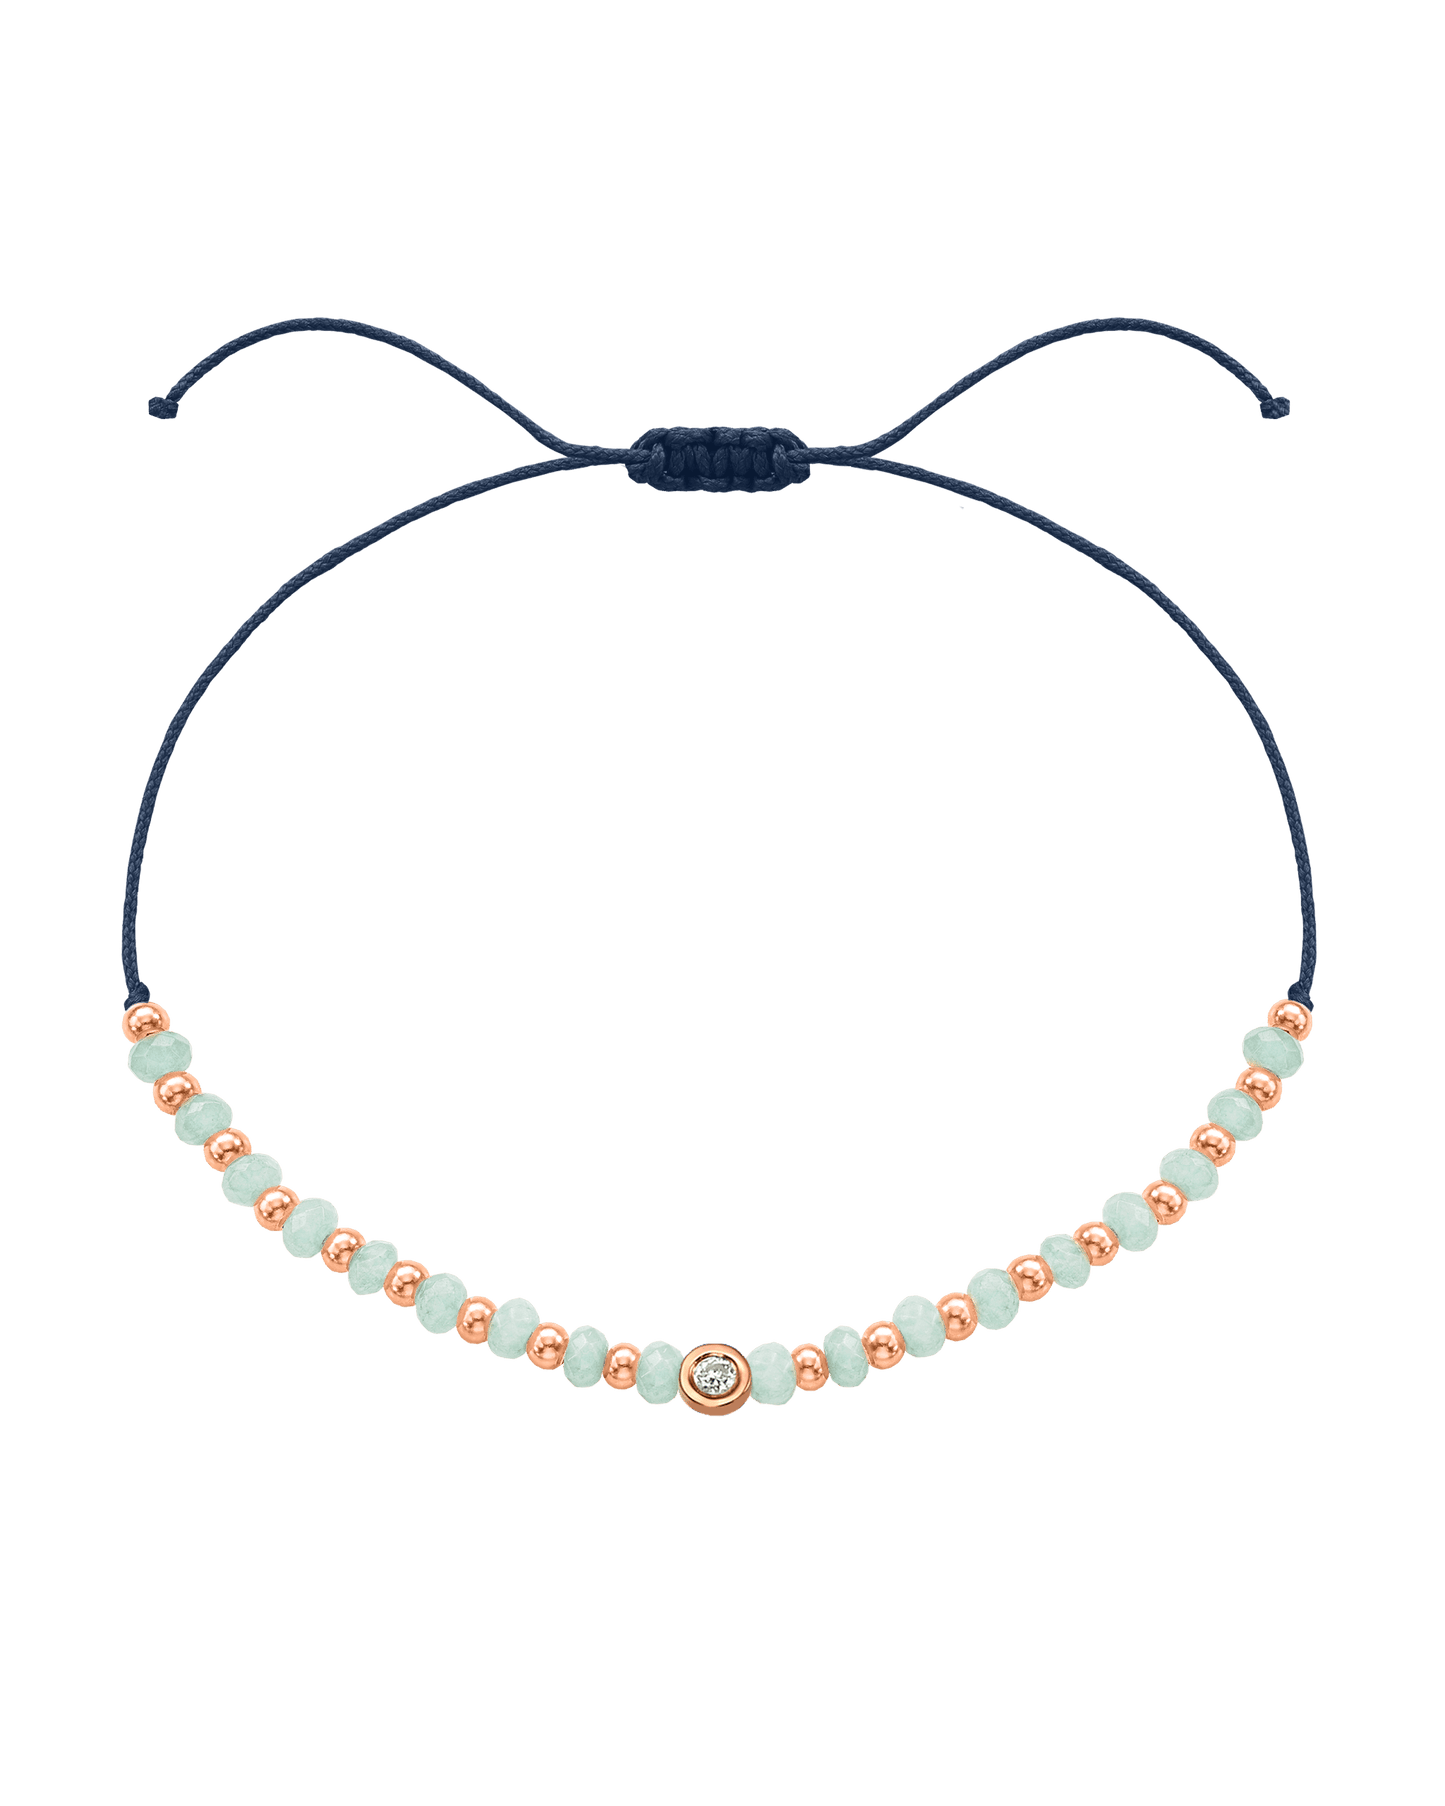 Apatite Gemstone String of Love Bracelet for Inspiration - 14K Rose Gold Bracelets 14K Solid Gold Navy Blue Small: 0.03ct 